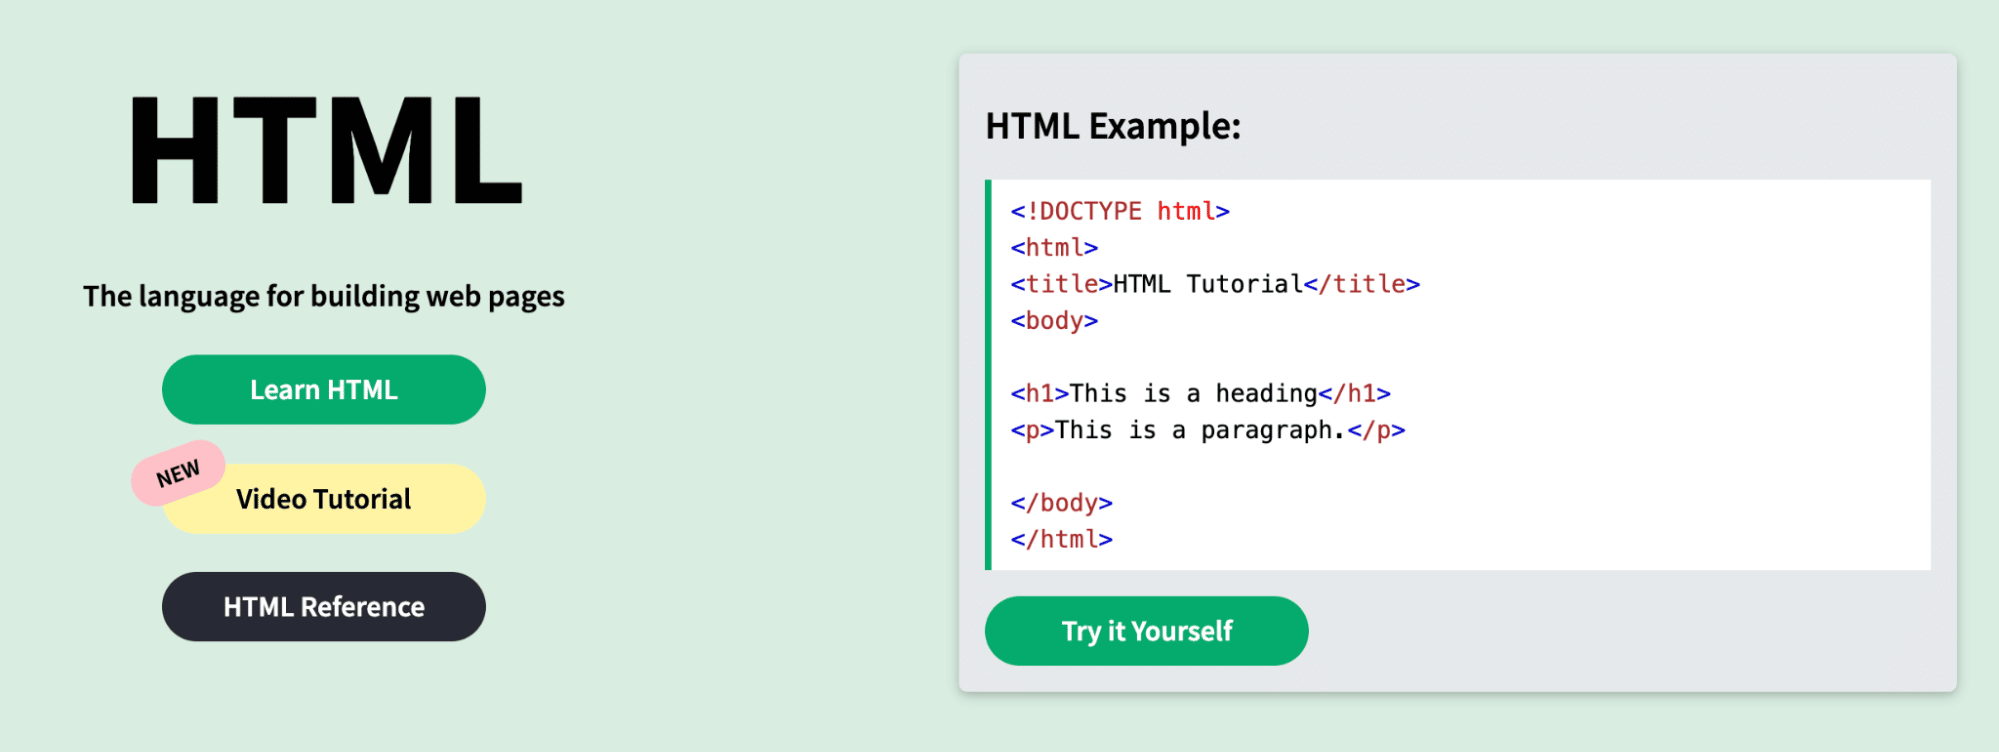 HTML Language Example